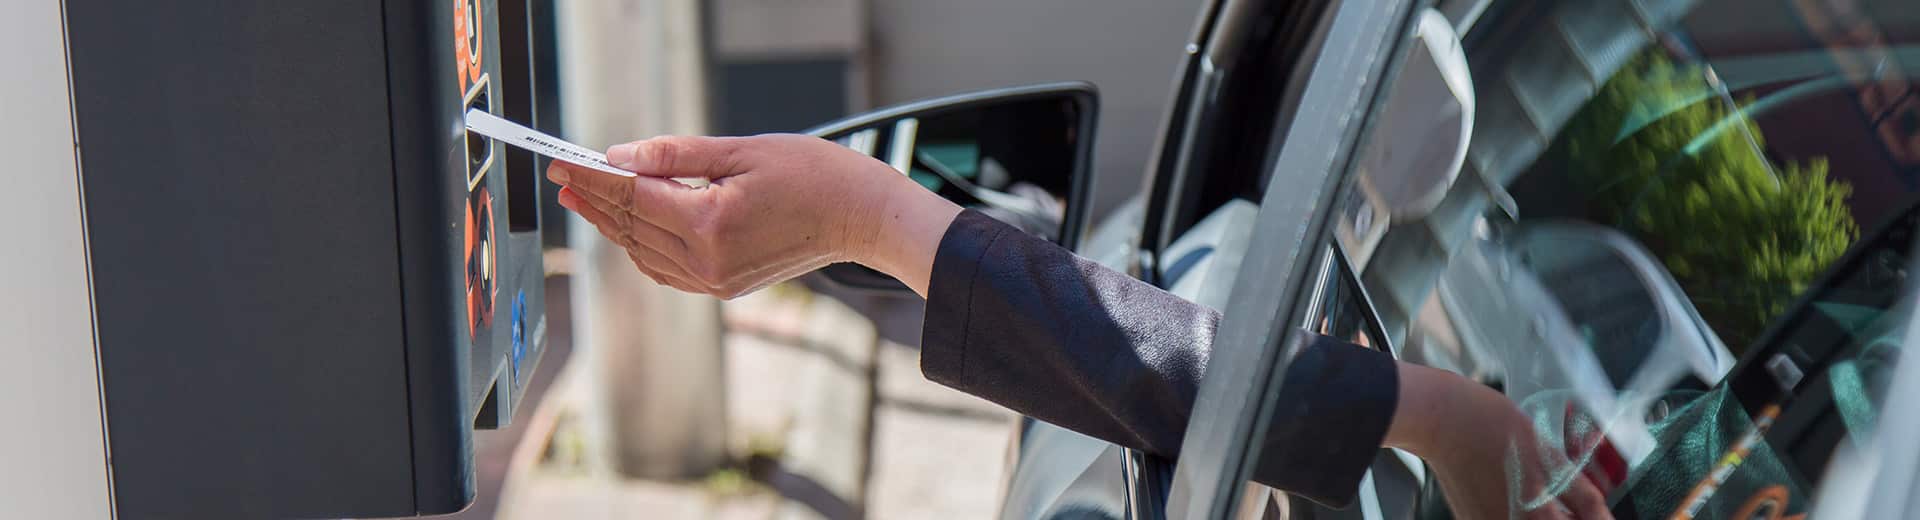 Valokuva, jossa näkyy henkilön käsi, joka ojentuu autosta laittamaan parkkilippua automaattiin.